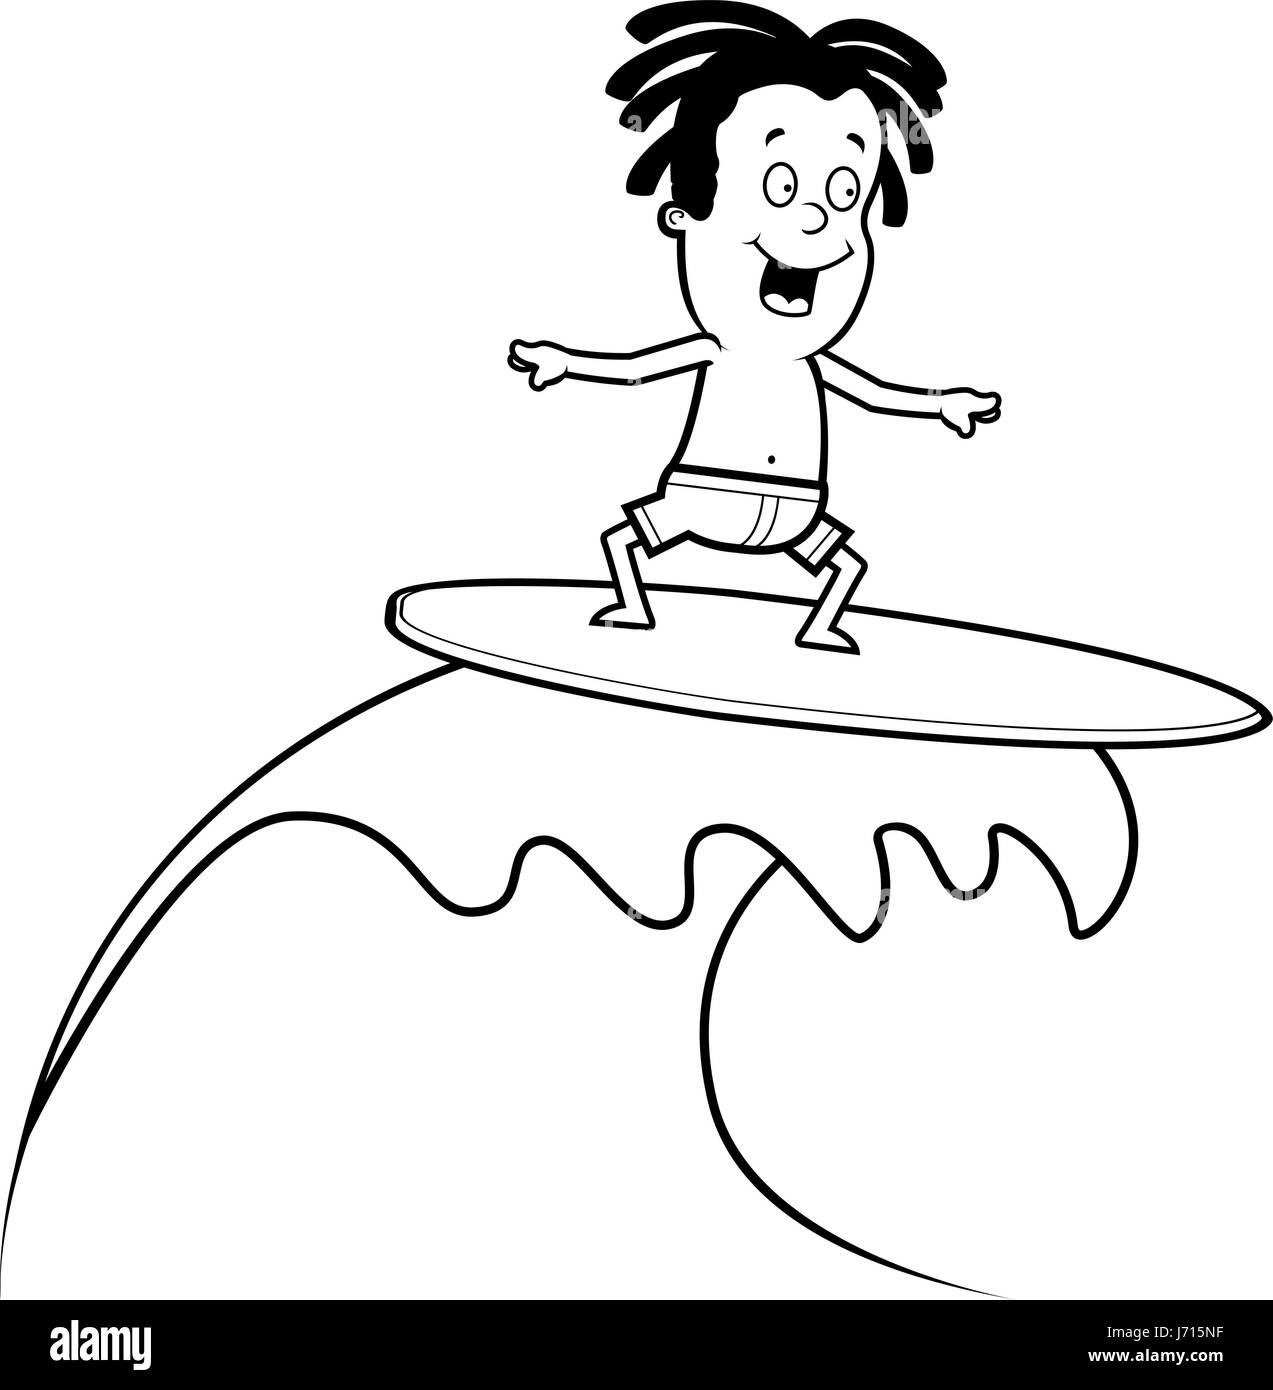 Ein glückliches Cartoon Kind Surfen auf einer Welle. Stock Vektor